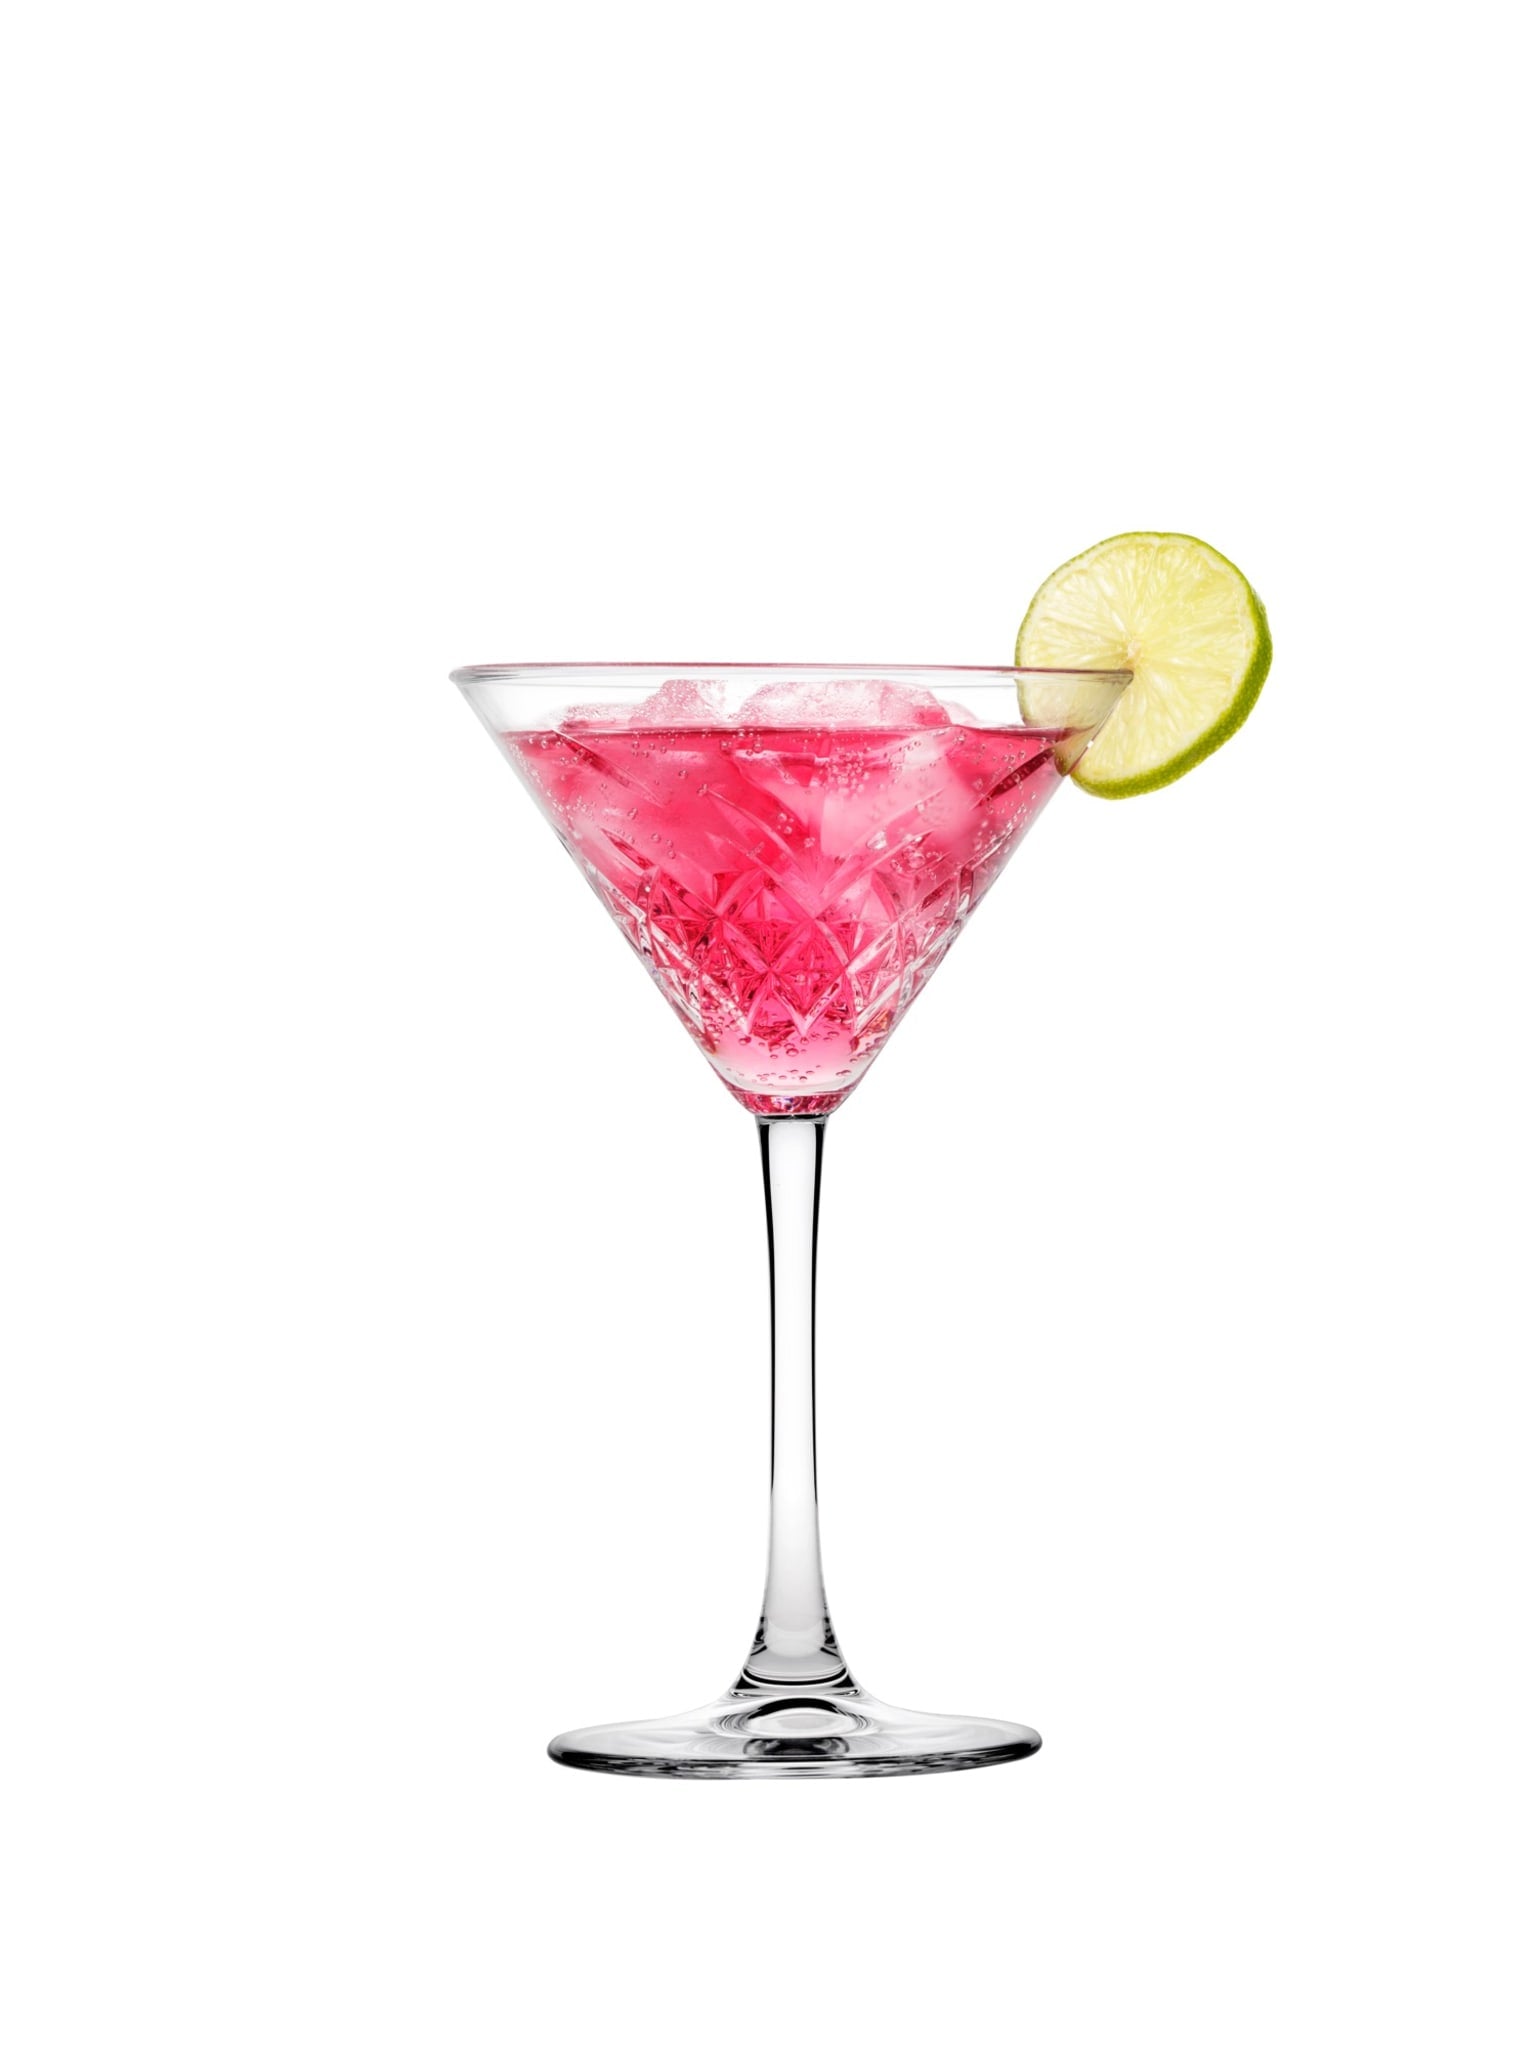 Forkæl dig selv eller dine gæster med en velsmagende martini serveret i dette luksuriøse Pasabahce Timeless Martini Glas.